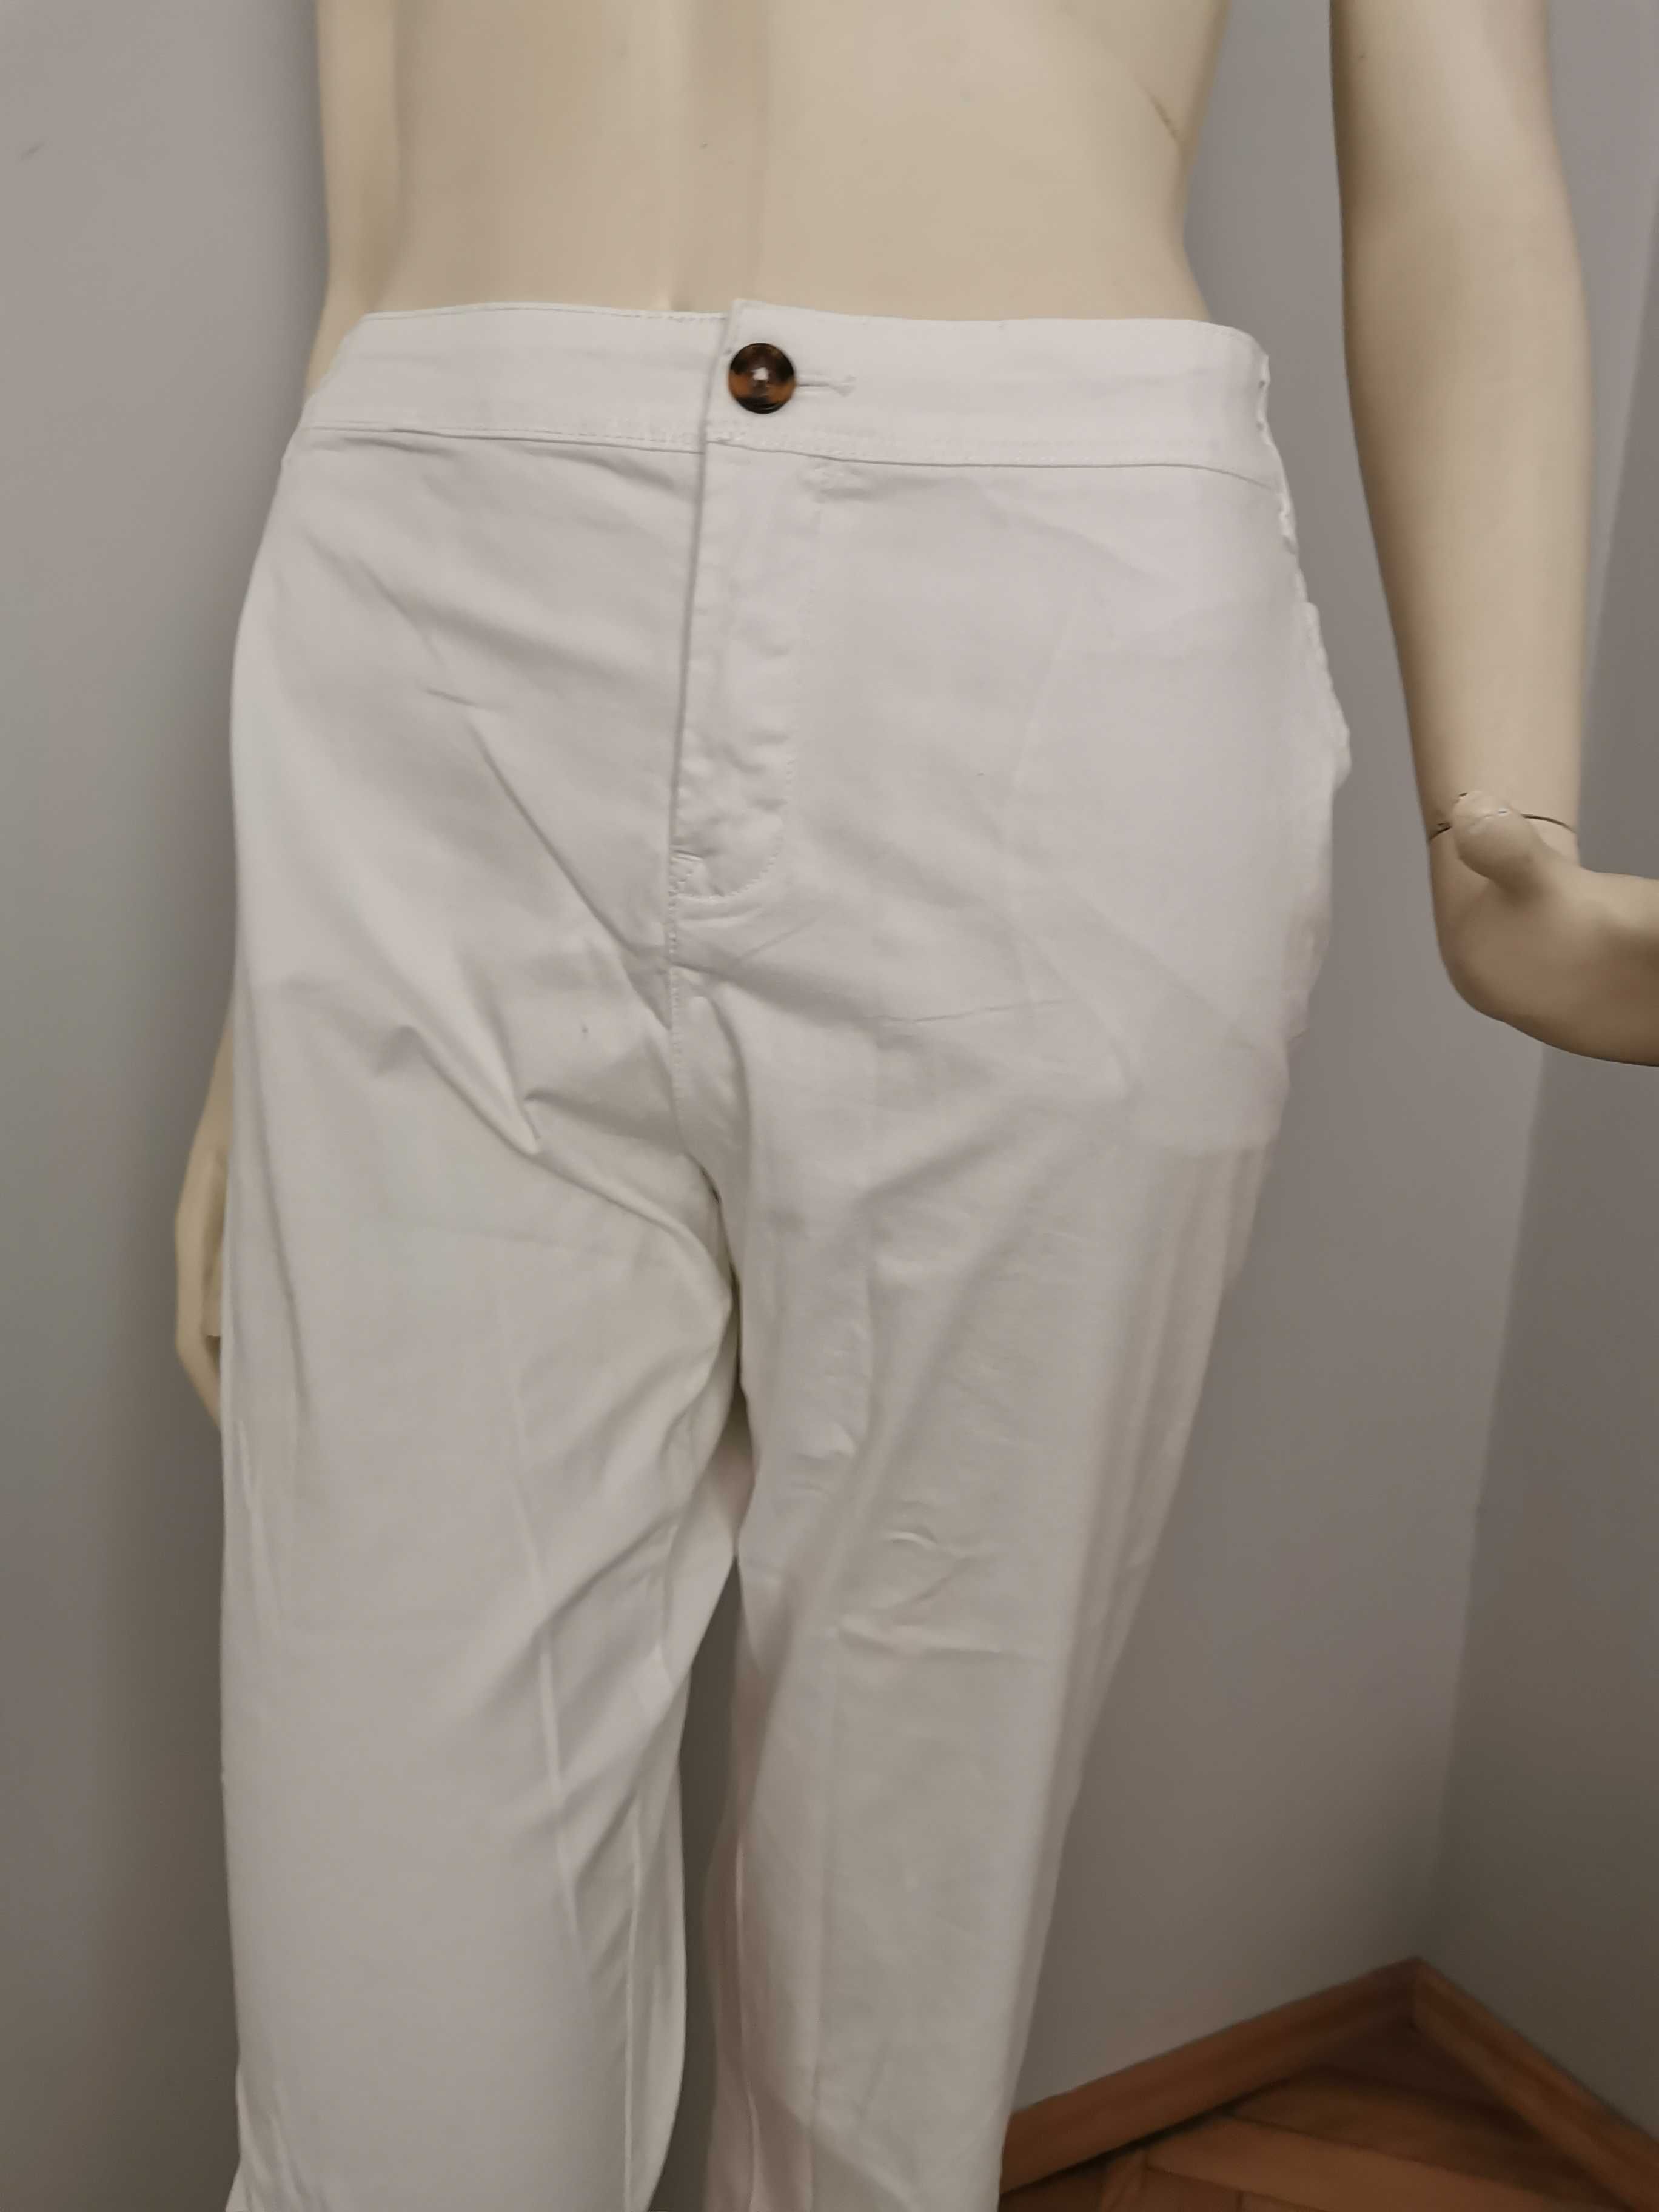 YESSICA THE CHINO- Cudne Damskie Białe Spodnie Elastyczne L/44